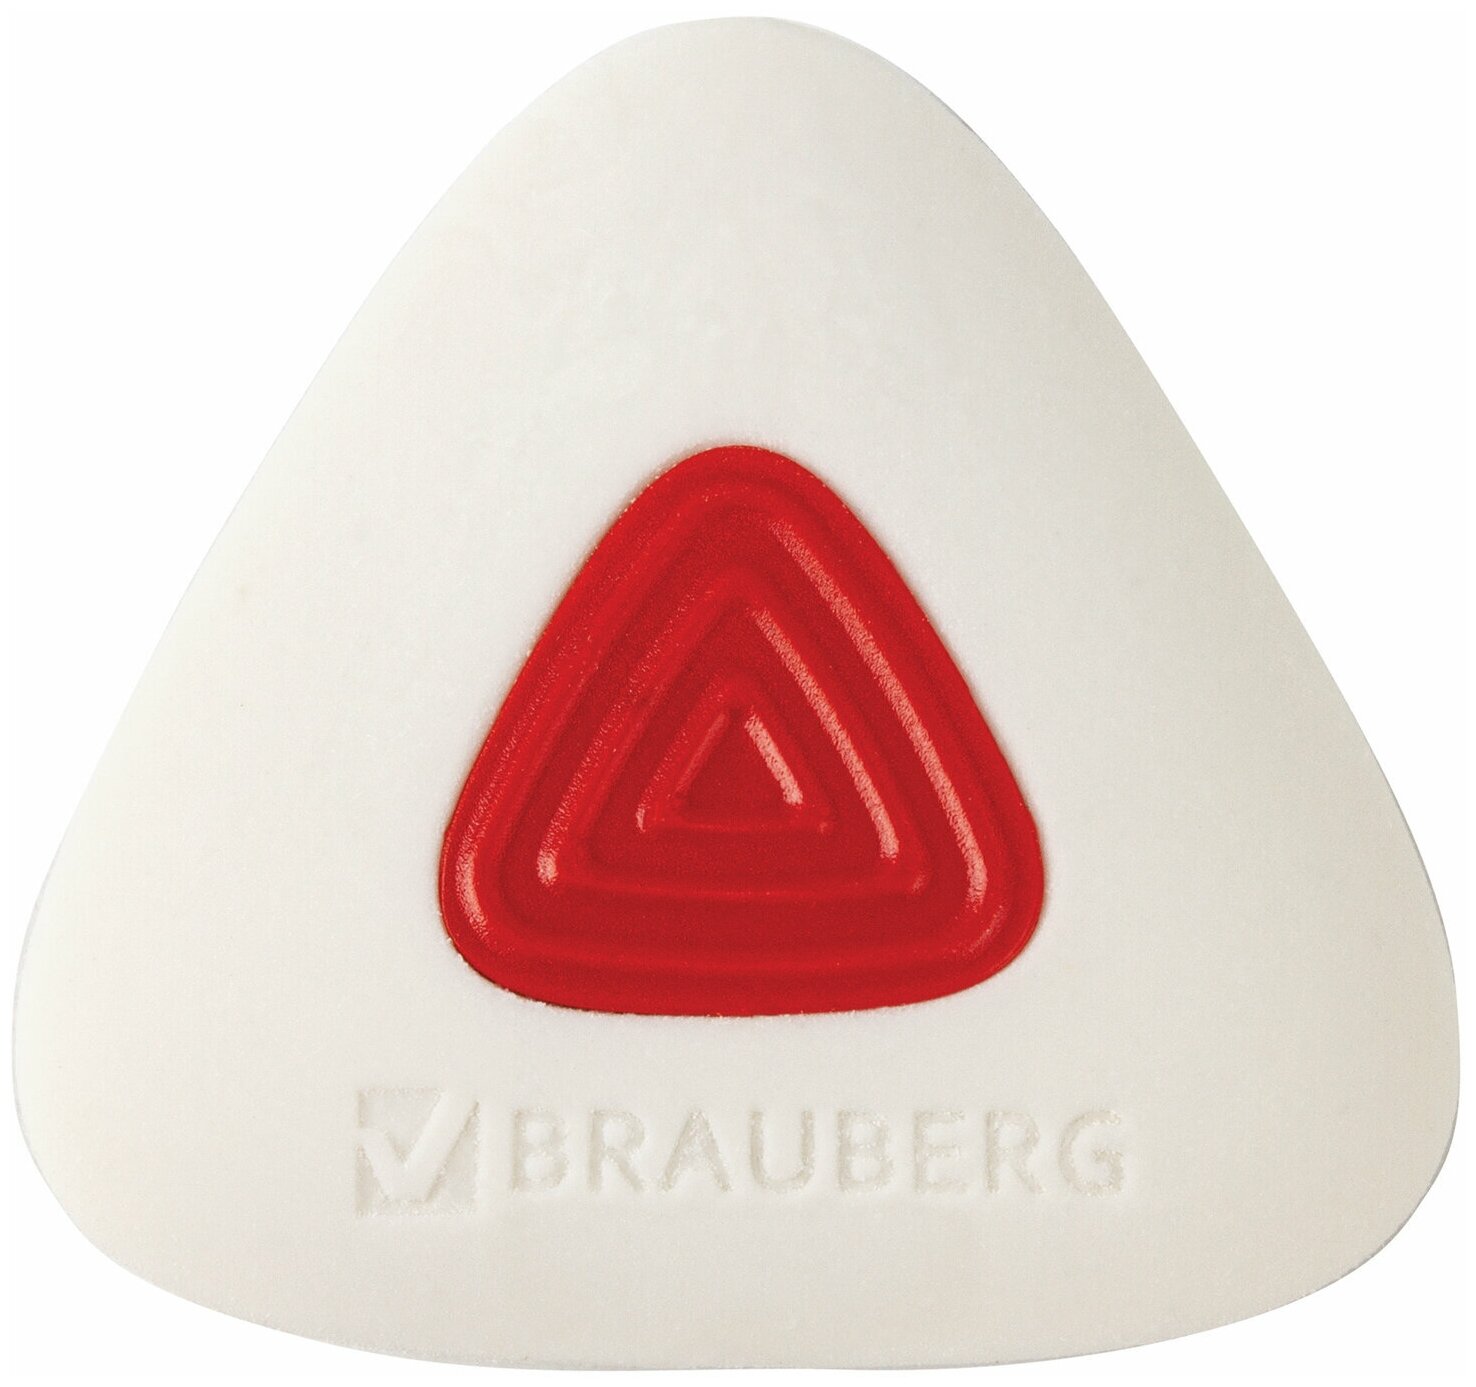 Ластик BRAUBERG "Trios PRO", 36*36*9мм, белый, треугольный, красный пластиковый держатель, 229559, - Комплект 20 шт.(компл.)